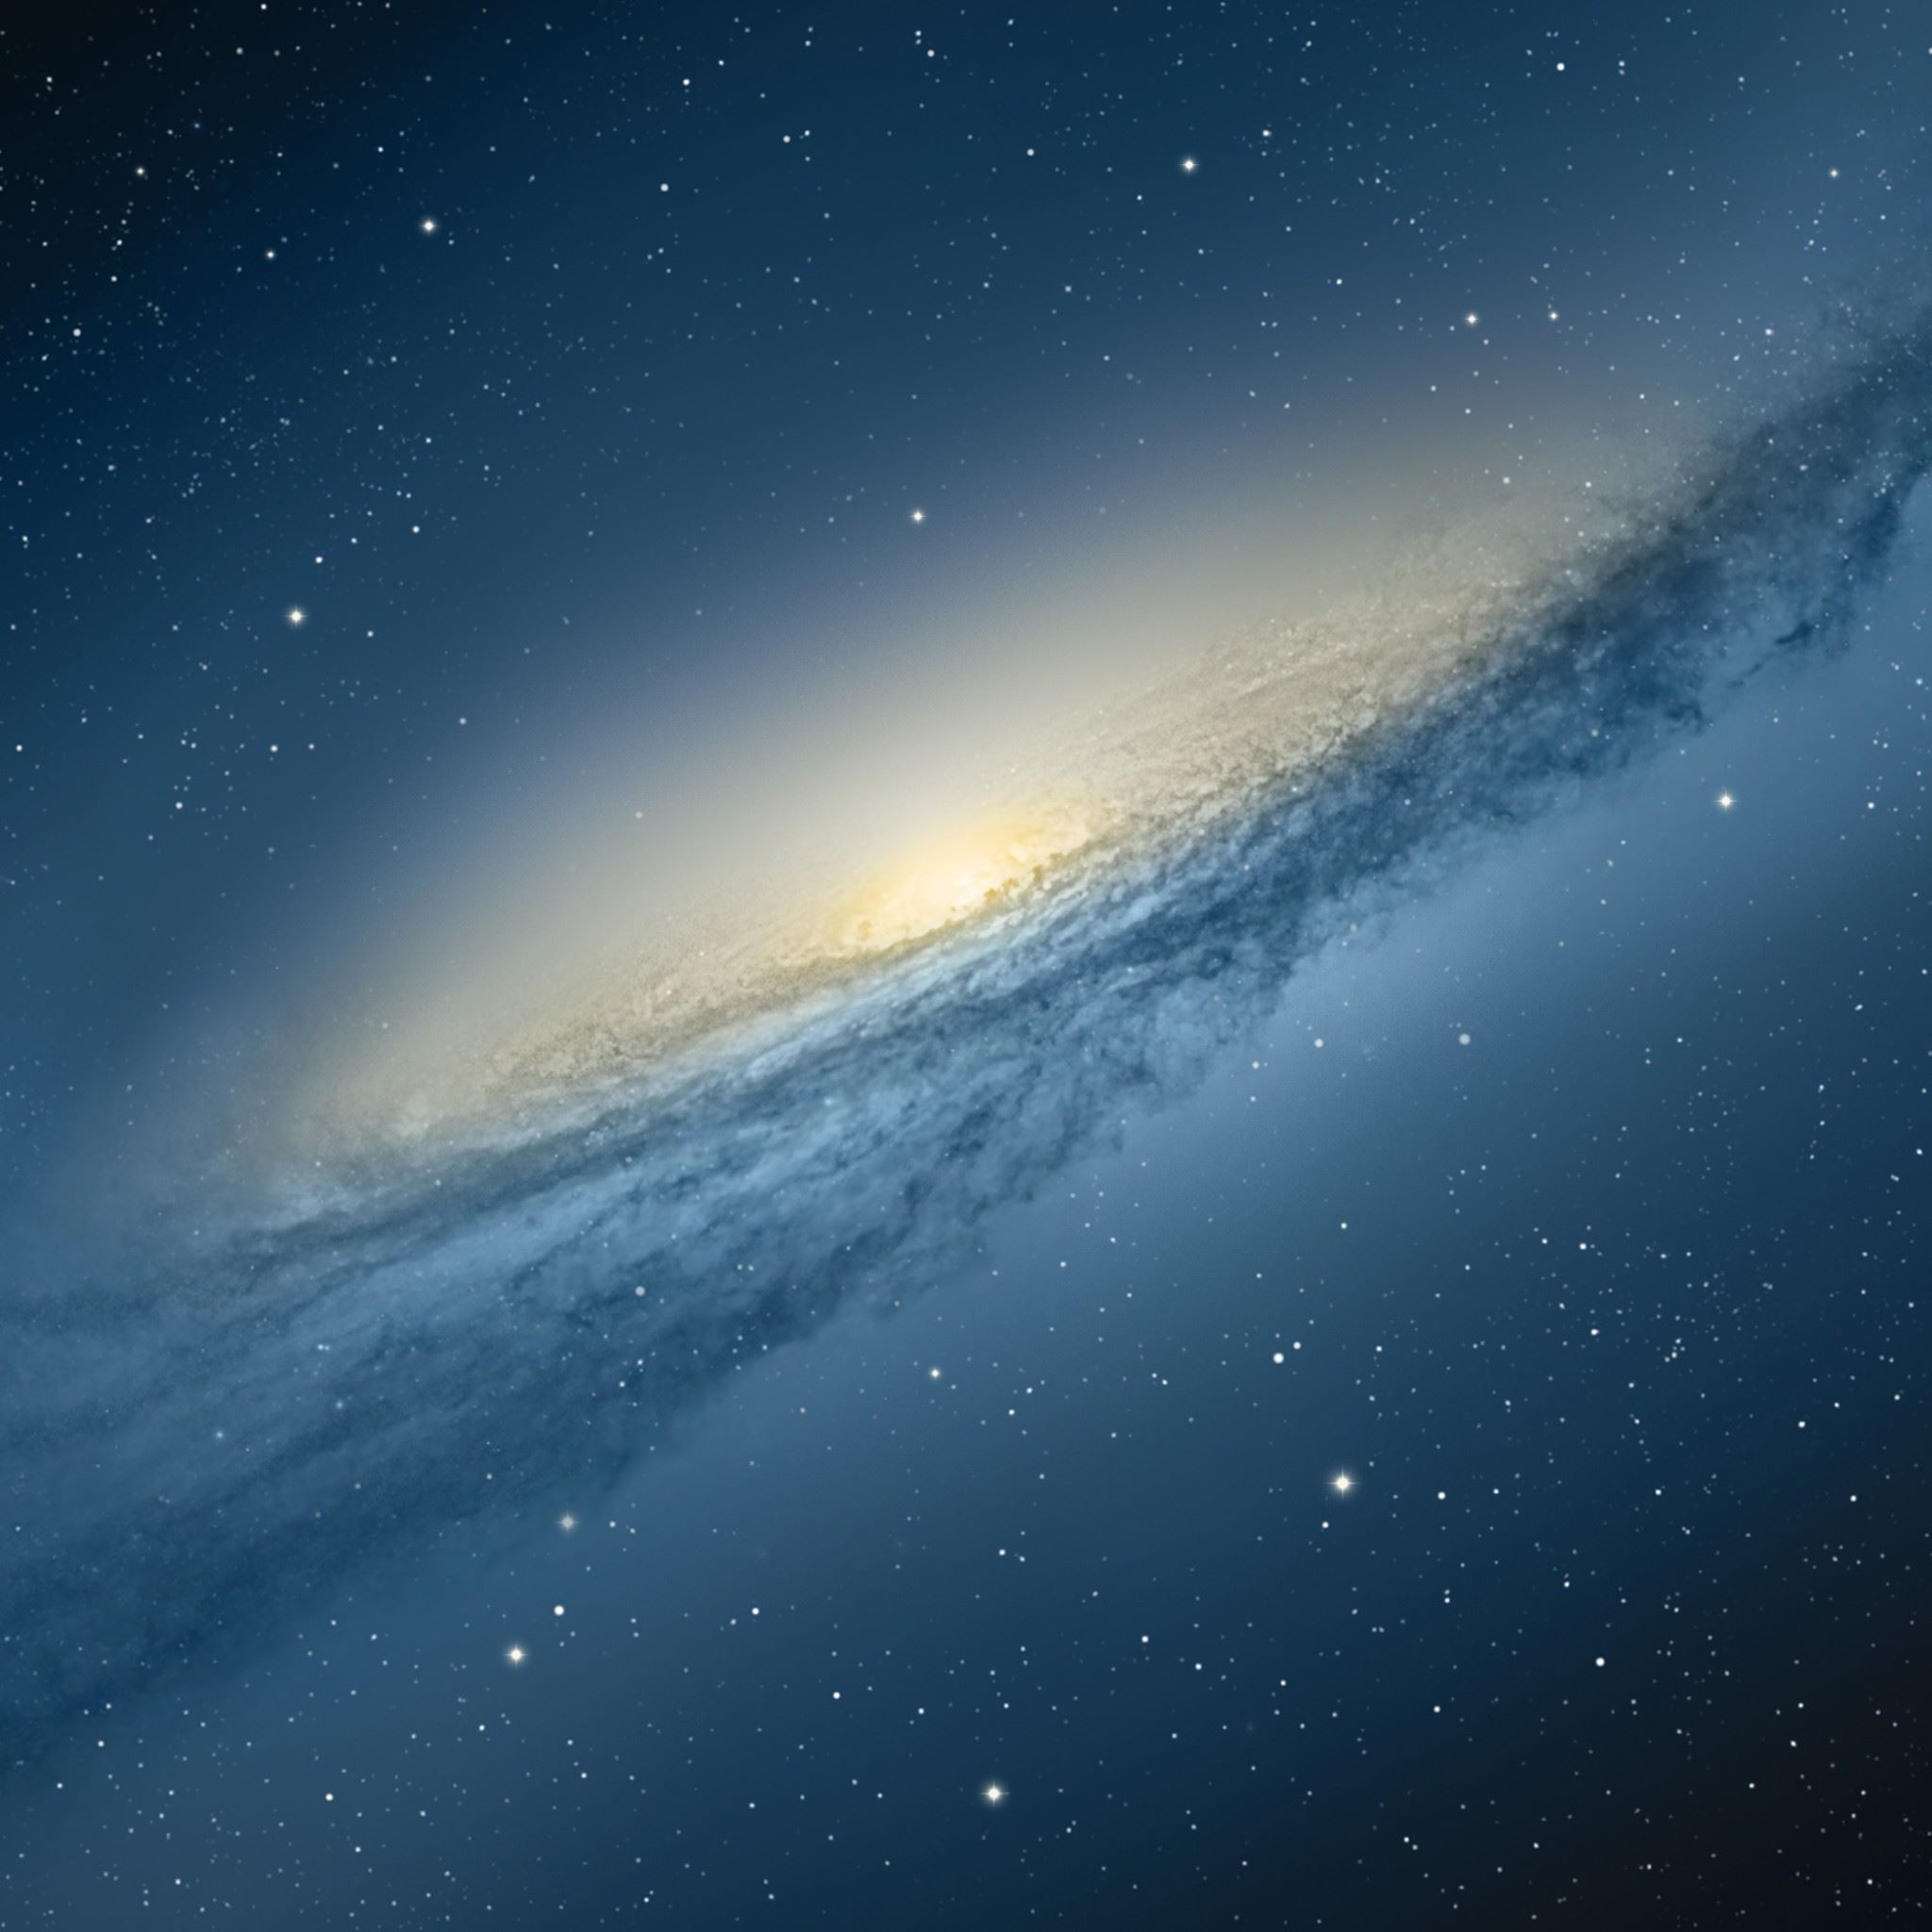 Nếu chỉ muốn tìm kiếm những hình ảnh Desktop đẹp nhất cho màn hình của mình, bộ sưu tập ảnh Nền Dải Ngân Hà của chúng tôi chắc chắn sẽ làm bạn hài lòng. Hãy khám phá các công trình nghệ thuật tuyệt đẹp của chúng tôi về các vì sao và các hành tinh mới được phát hiện.